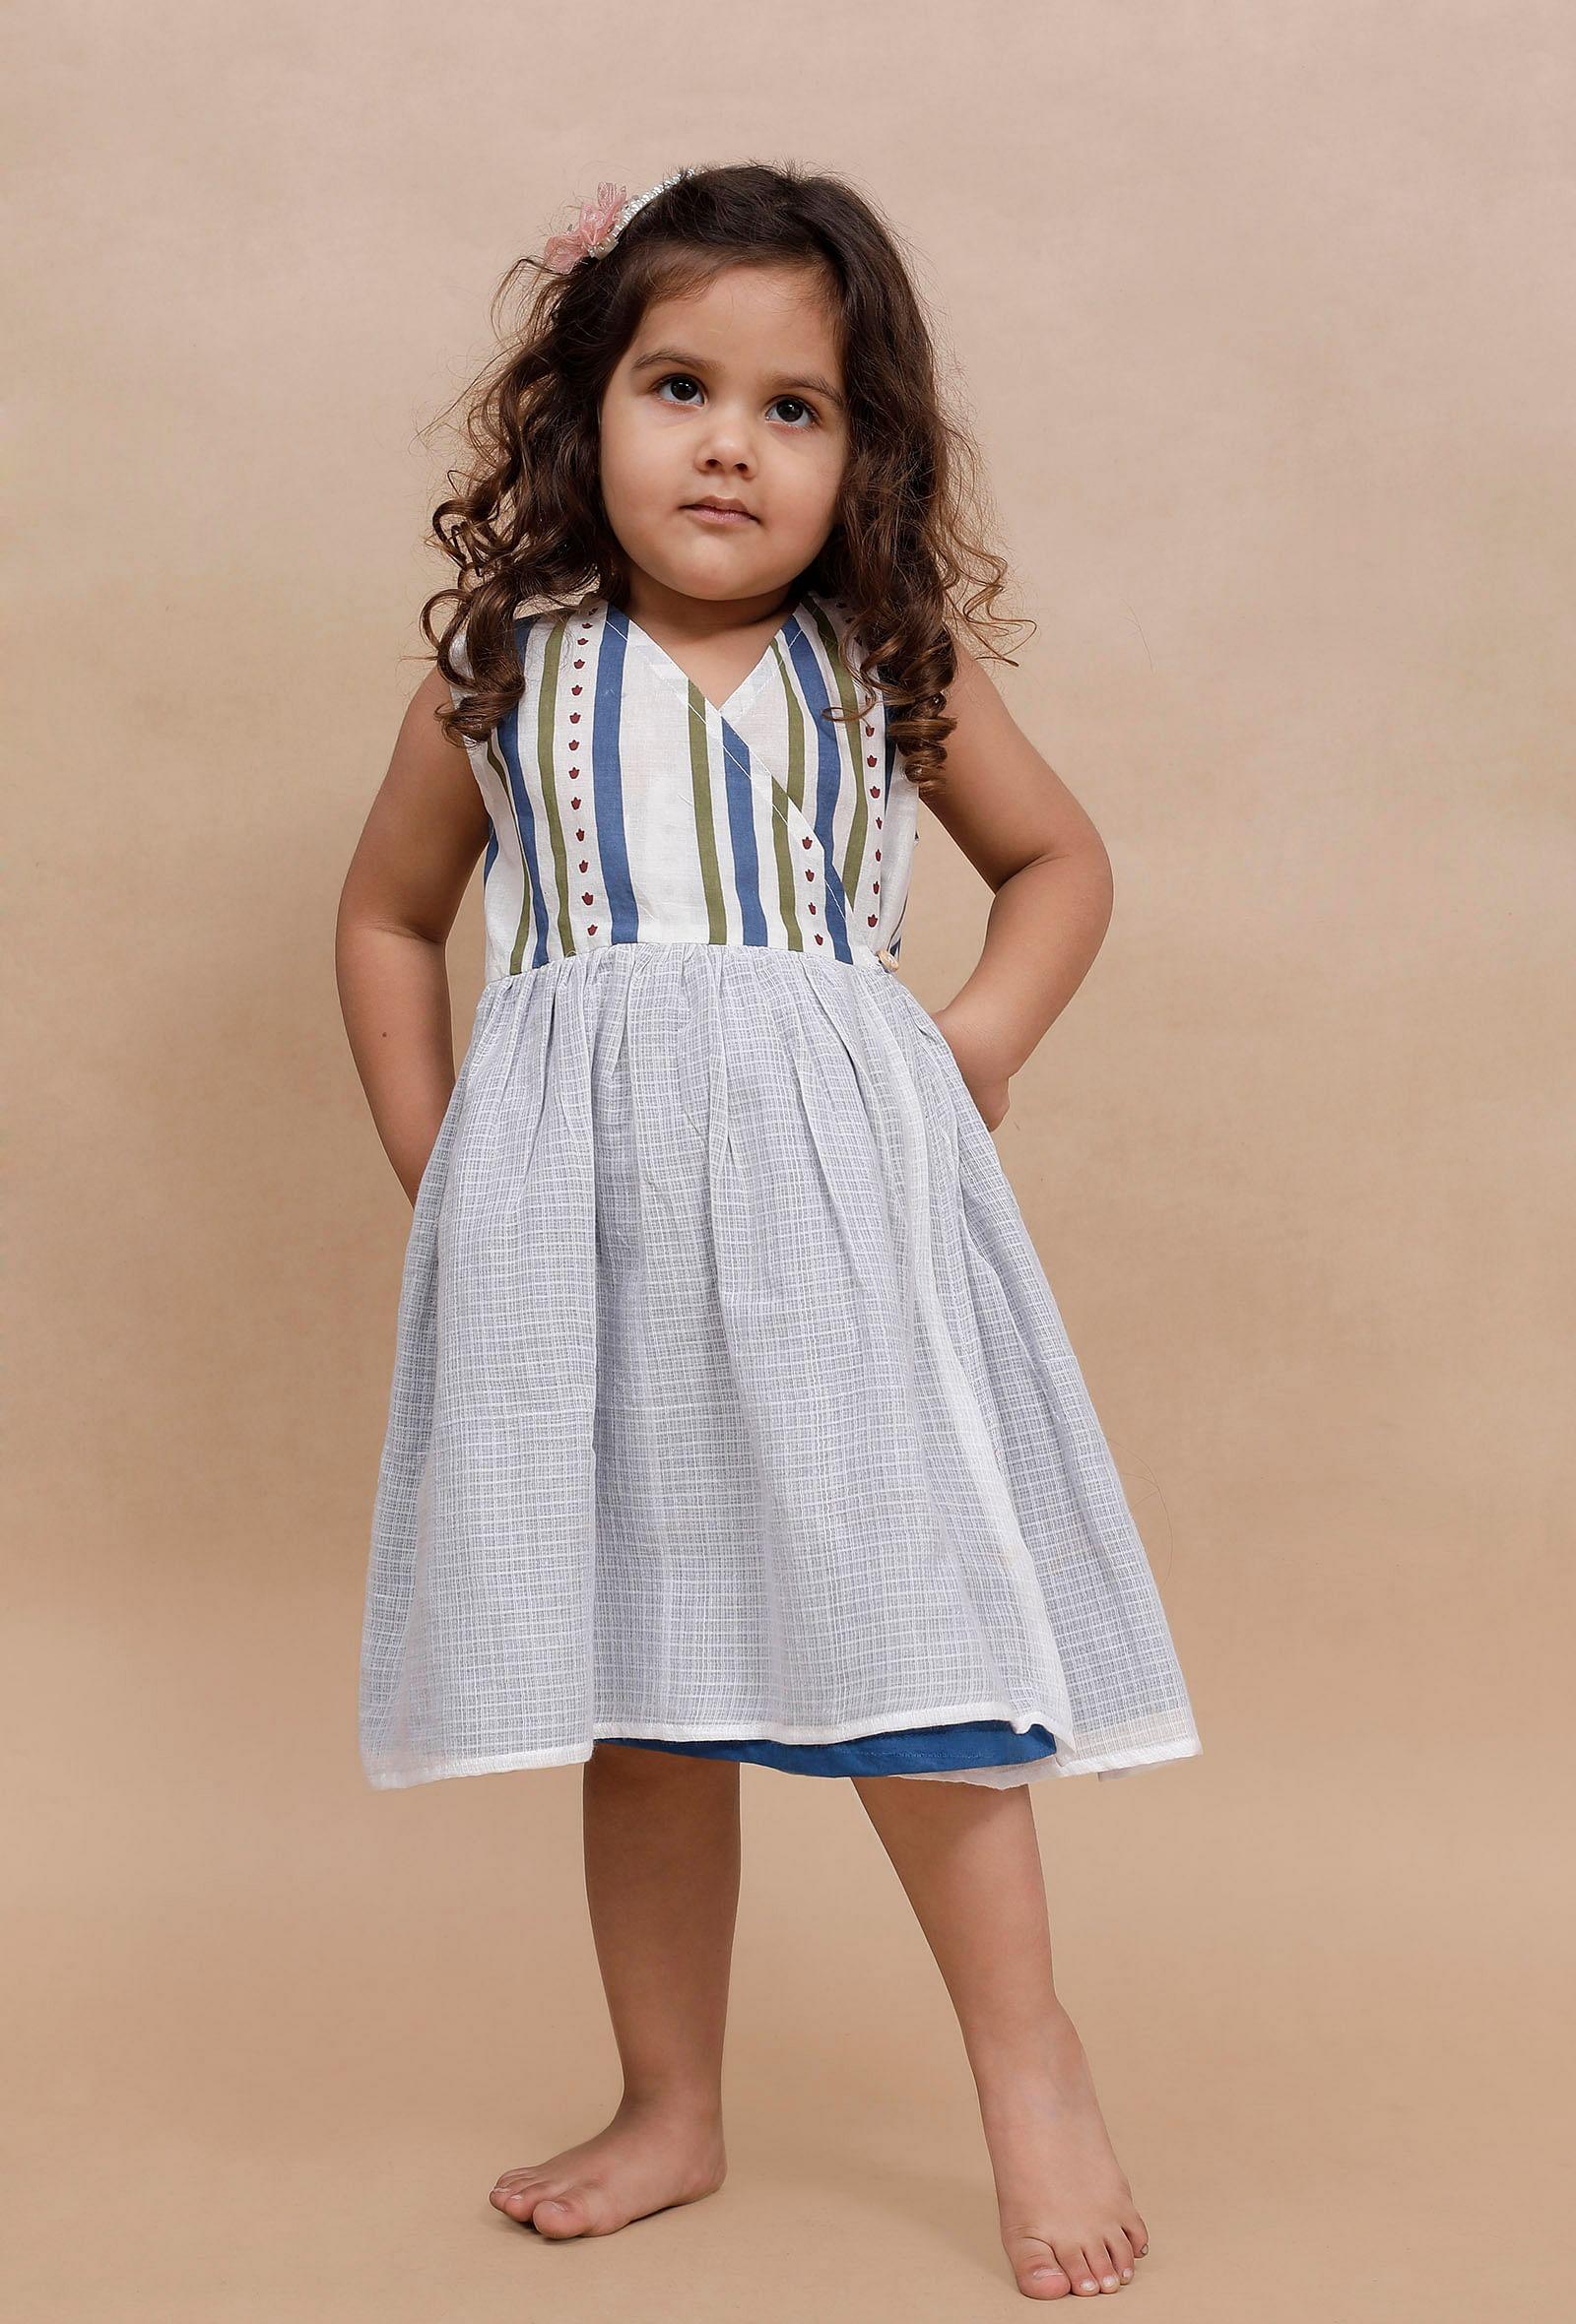 off-white-multi-colored-striped-dress